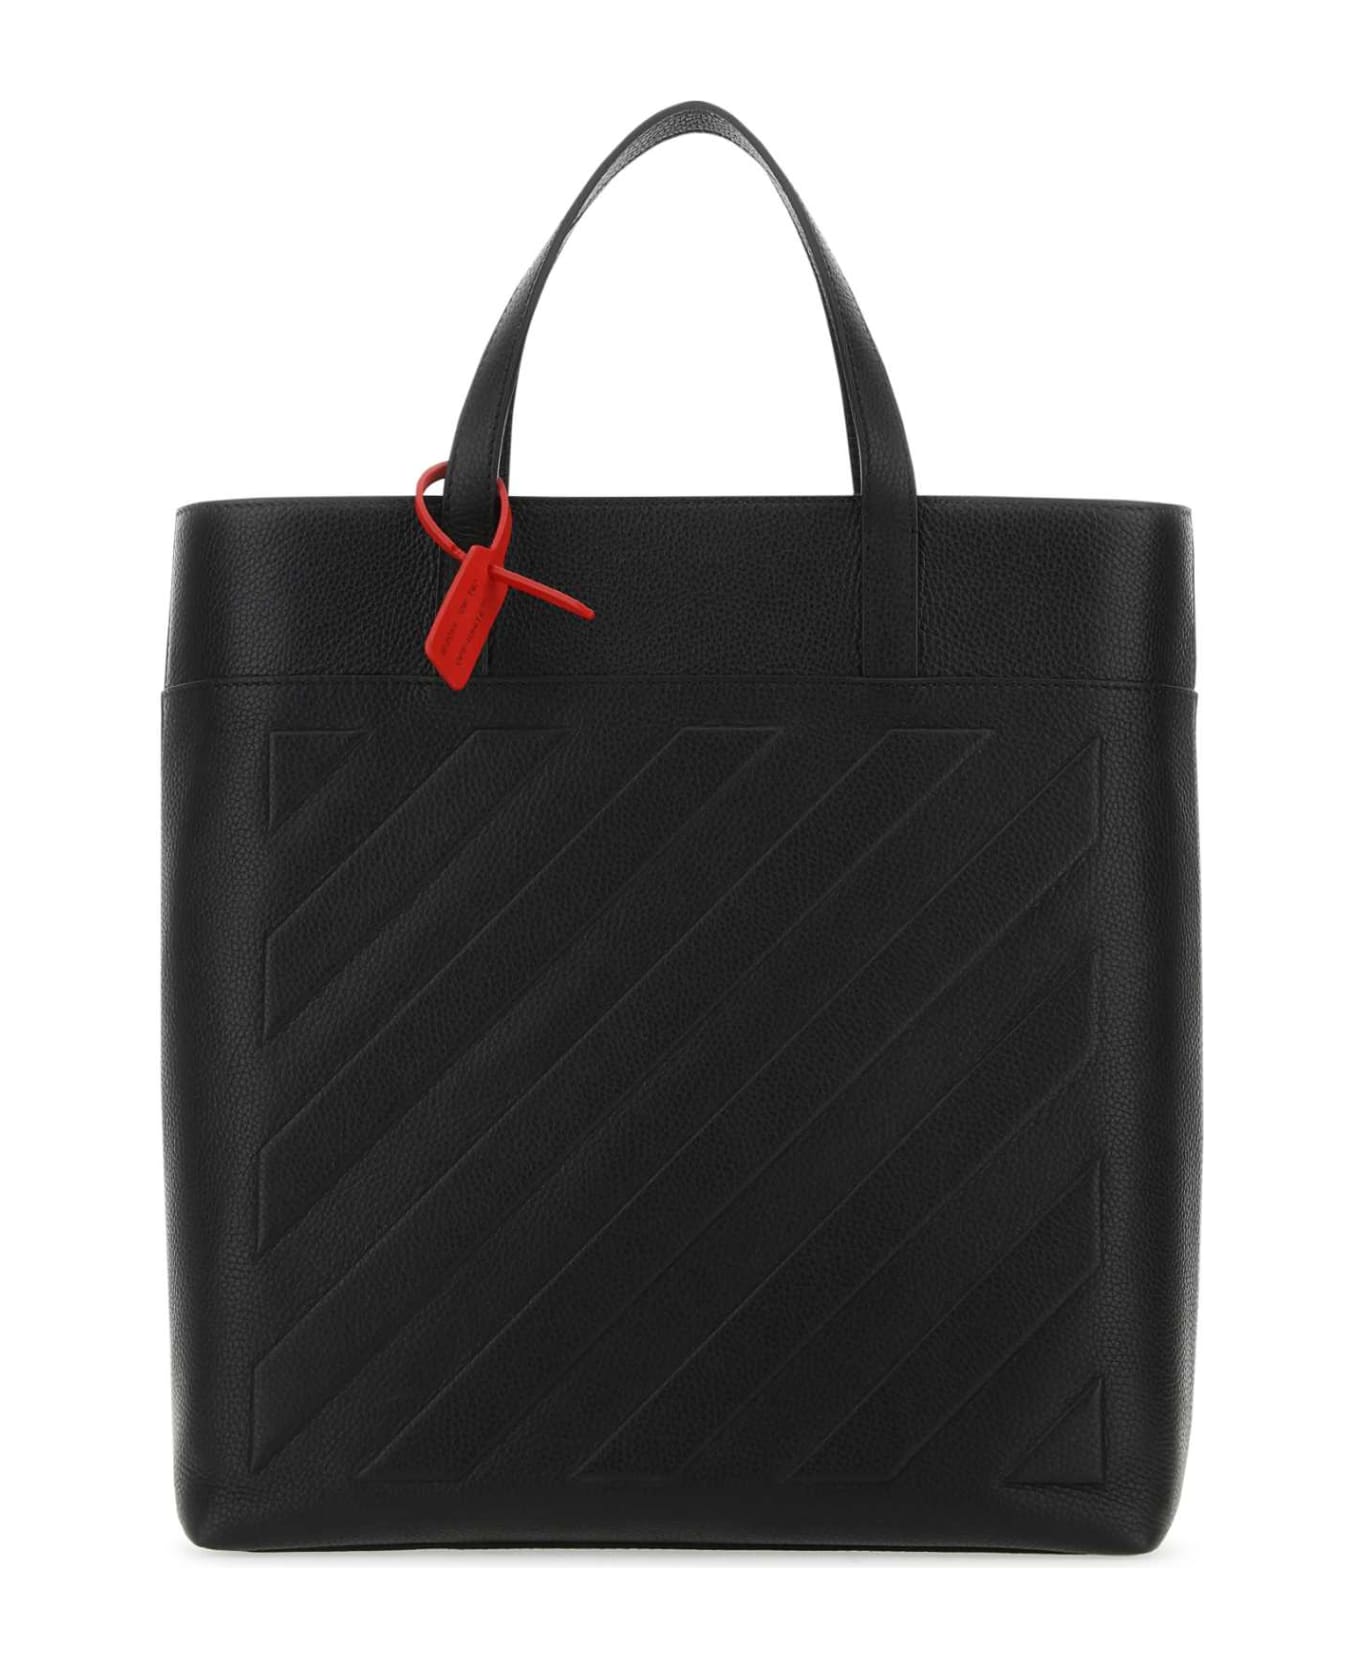 Off-White Black Leather Binder Shopping Bag - BLACKNOCOLOR トートバッグ